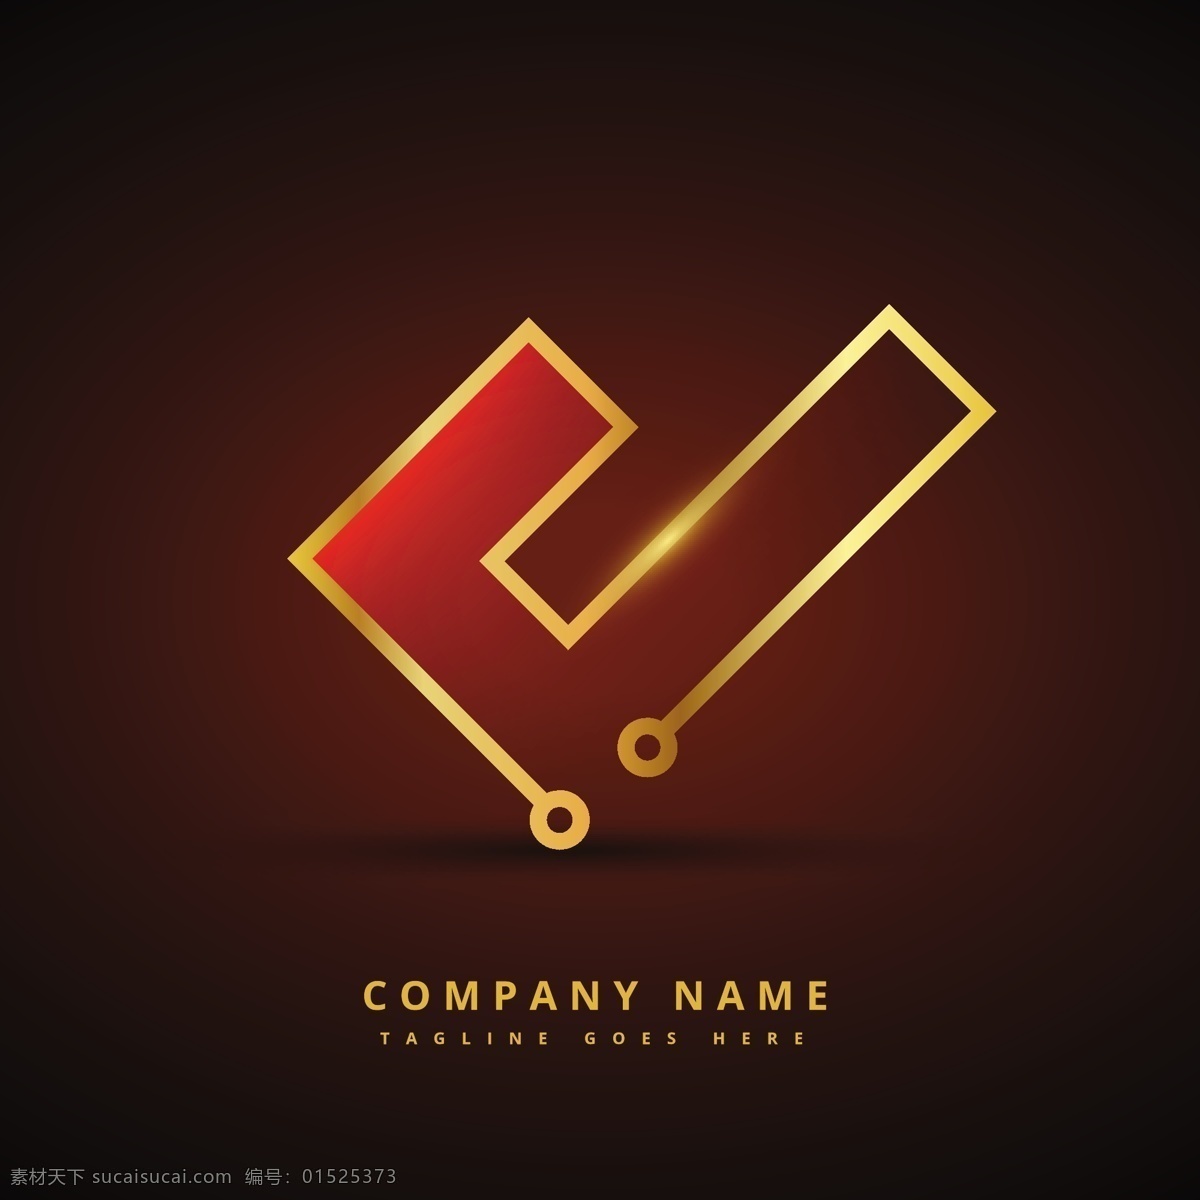 黄金 技术 风格 标志 标识 商业 抽象 图标 模板 符号 公司 品牌 创意 抽象的标志 形状 现代 企业形象 商业图标 身份 黑色